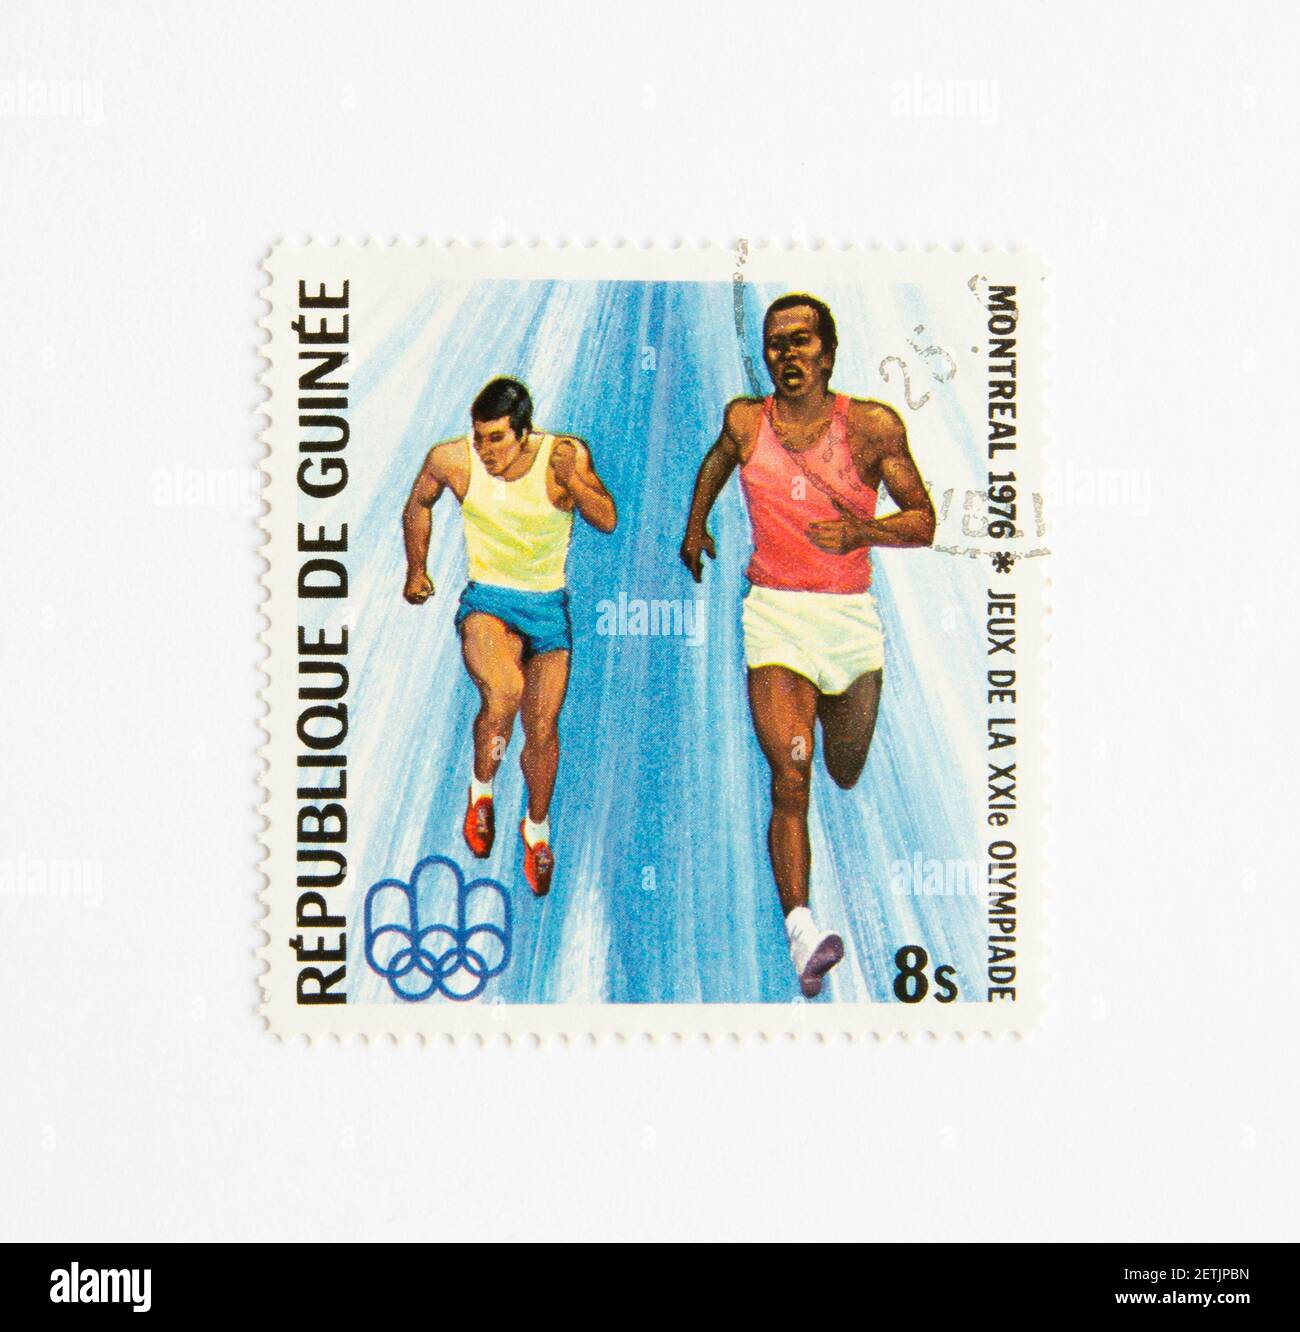 01.03.2021 Istanbul Turchia. Repubblica di Guinea francobollo. Circa 1976. Montreal 1976 Olimpiadi estive. maratona. Corsa sprint. Foto Stock